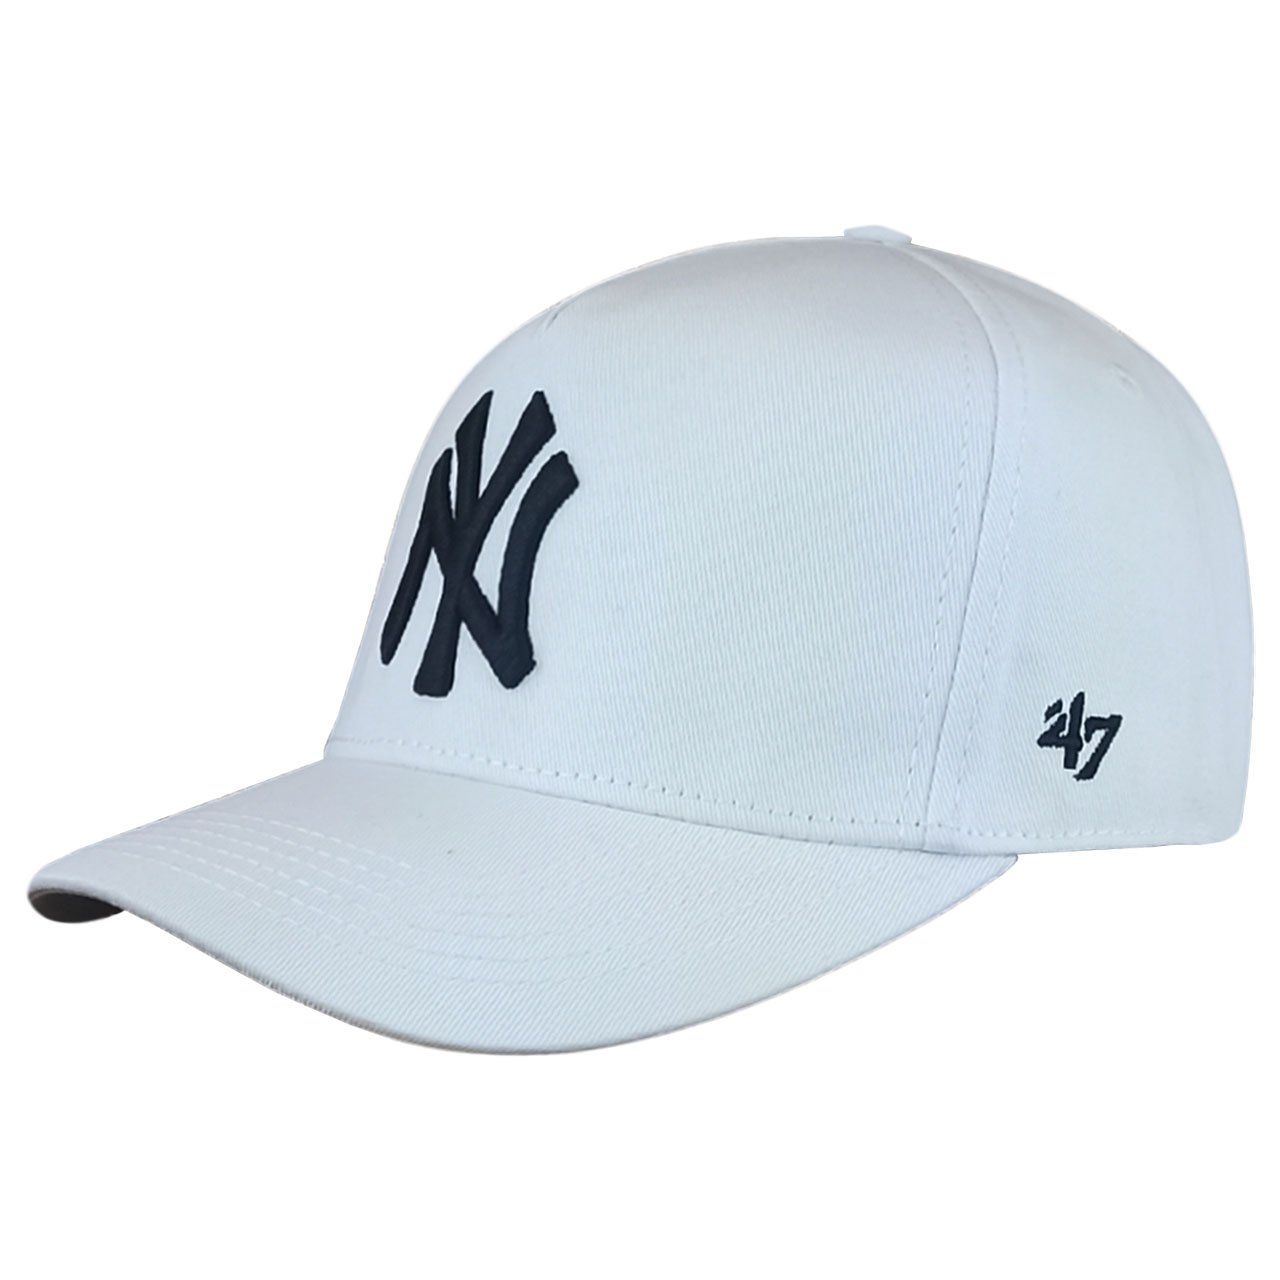 نکته خرید - قیمت روز کلاه کپ مدل NY کد mn834 خرید